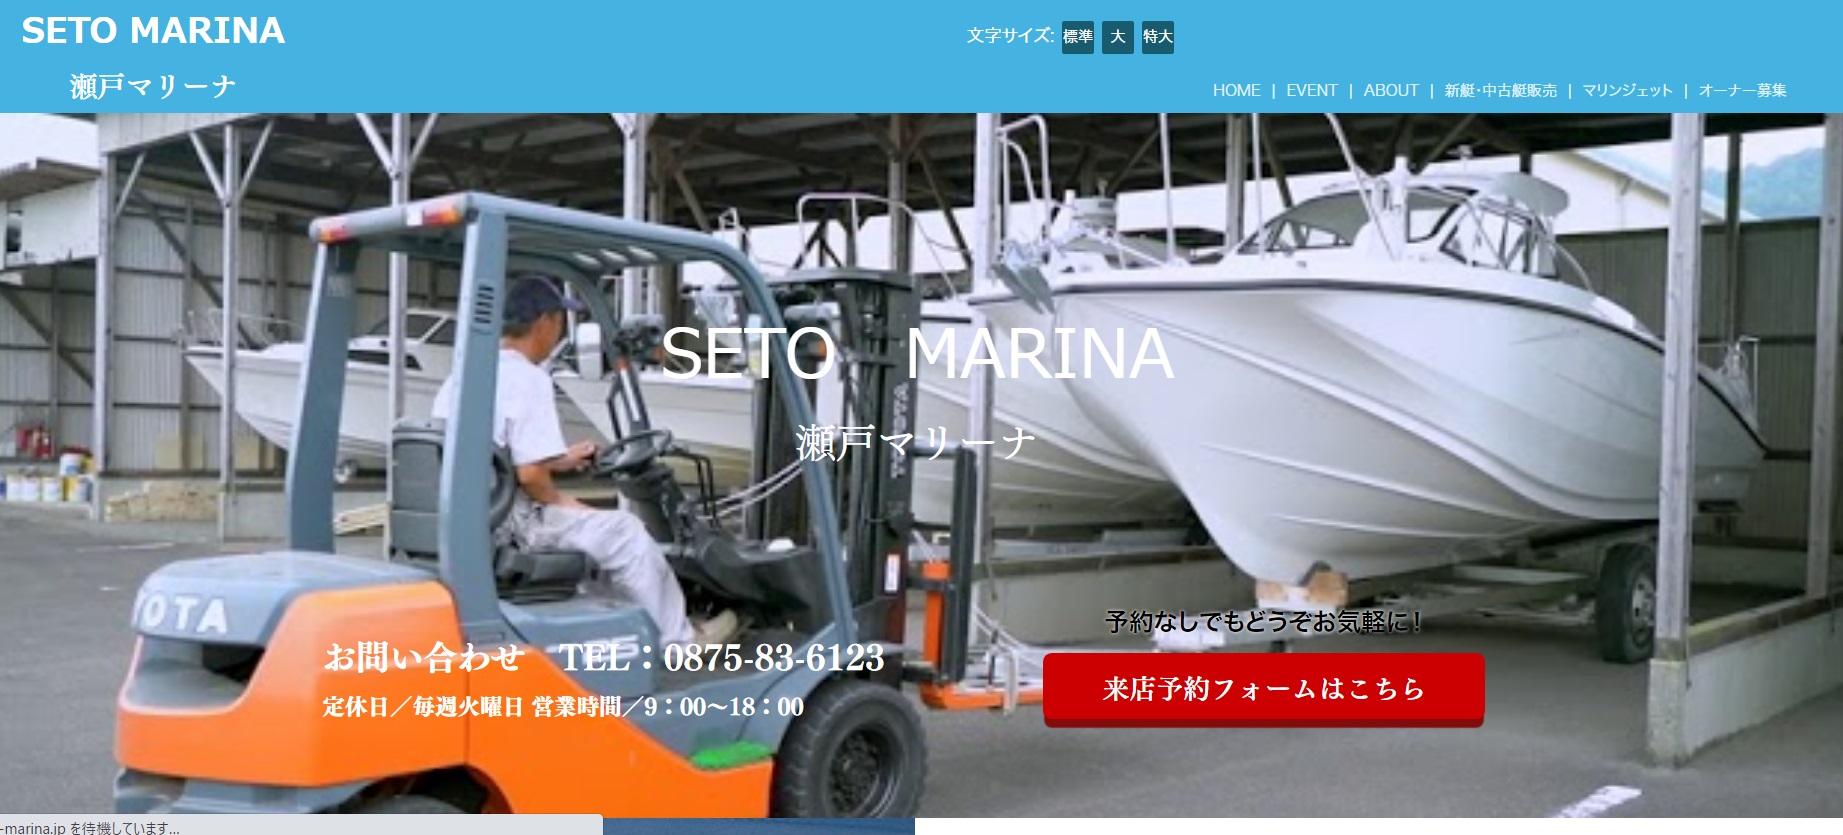 愛媛県 (有)村上猛海事事務所で小型船舶免許を取得